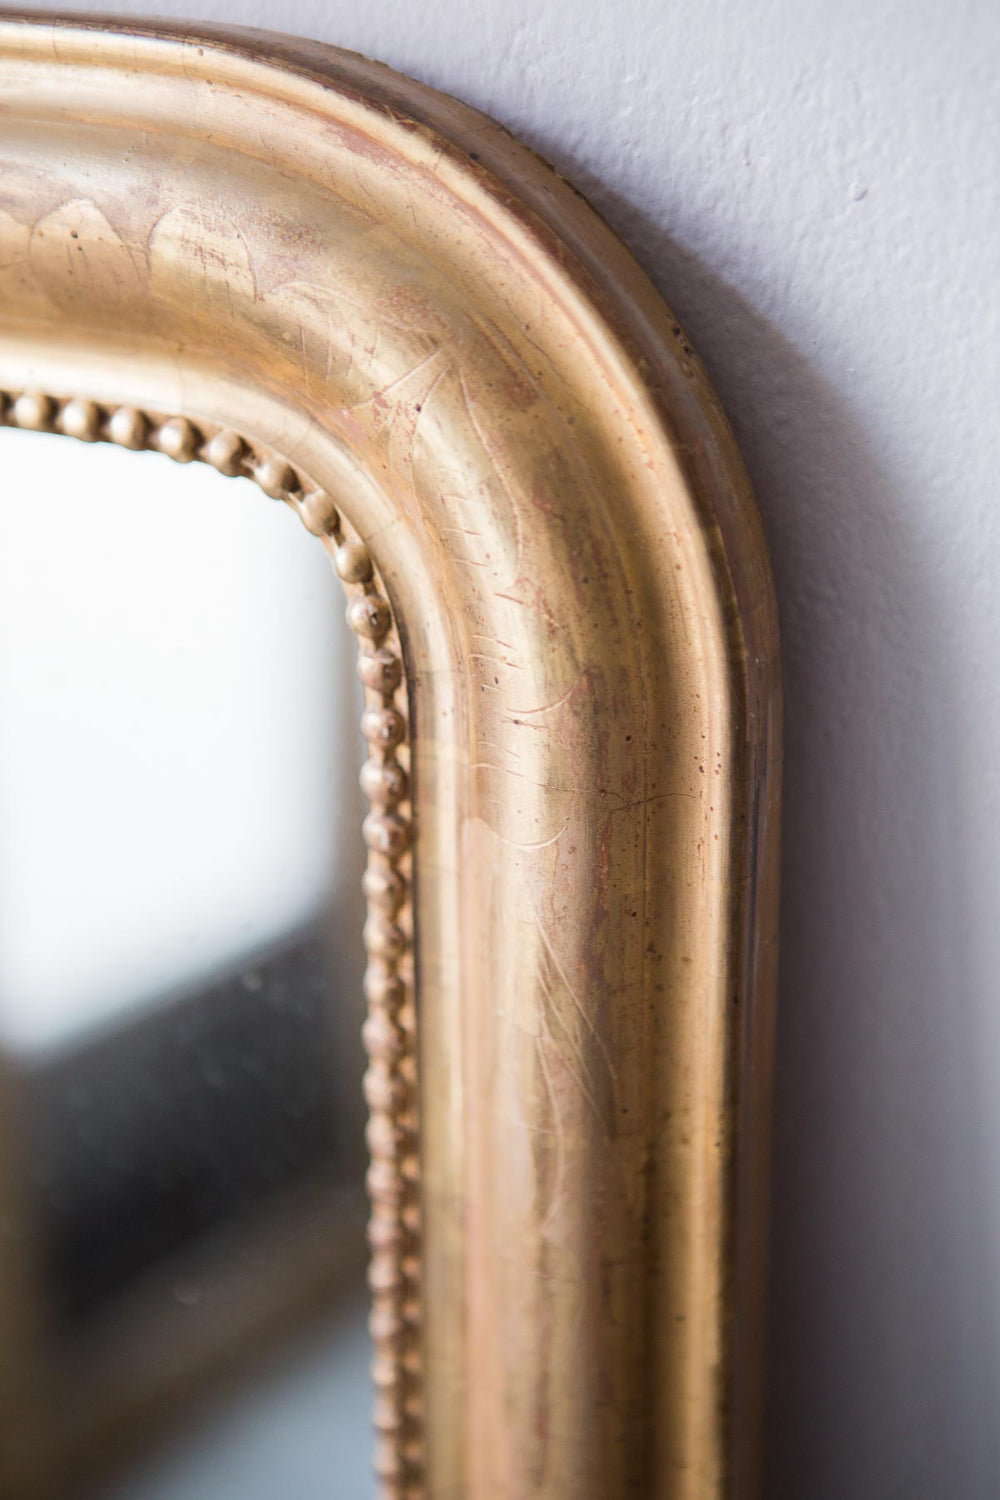 Gran y antiguo espejo francés dorado s. XIX (VENDIDO)